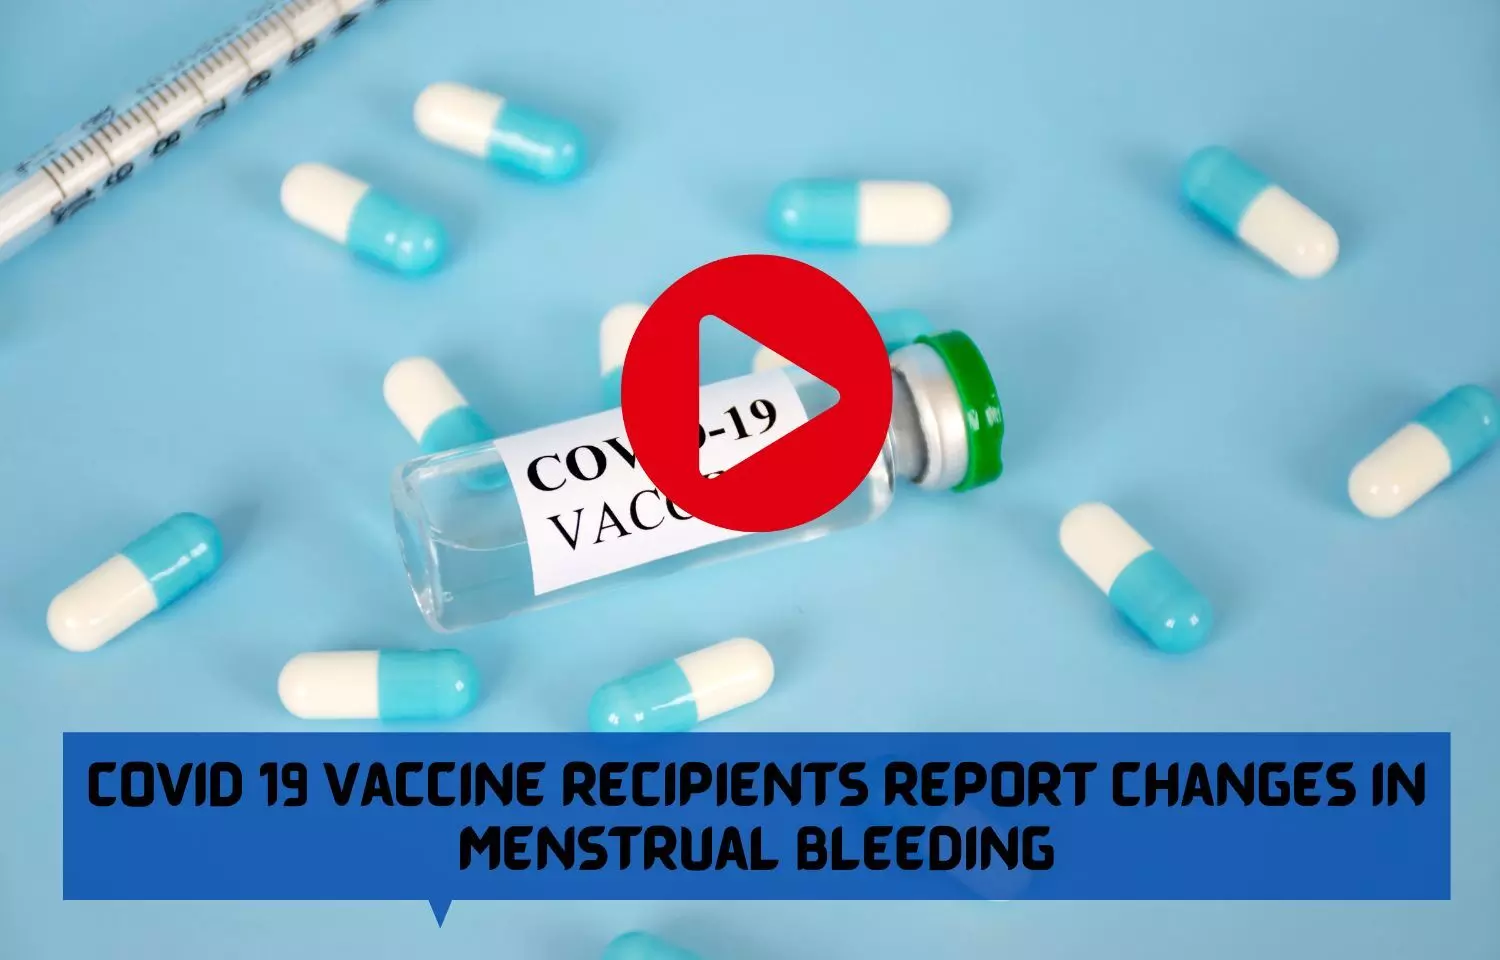 COVID 19 vaccine recipients report changes in menstrual bleeding